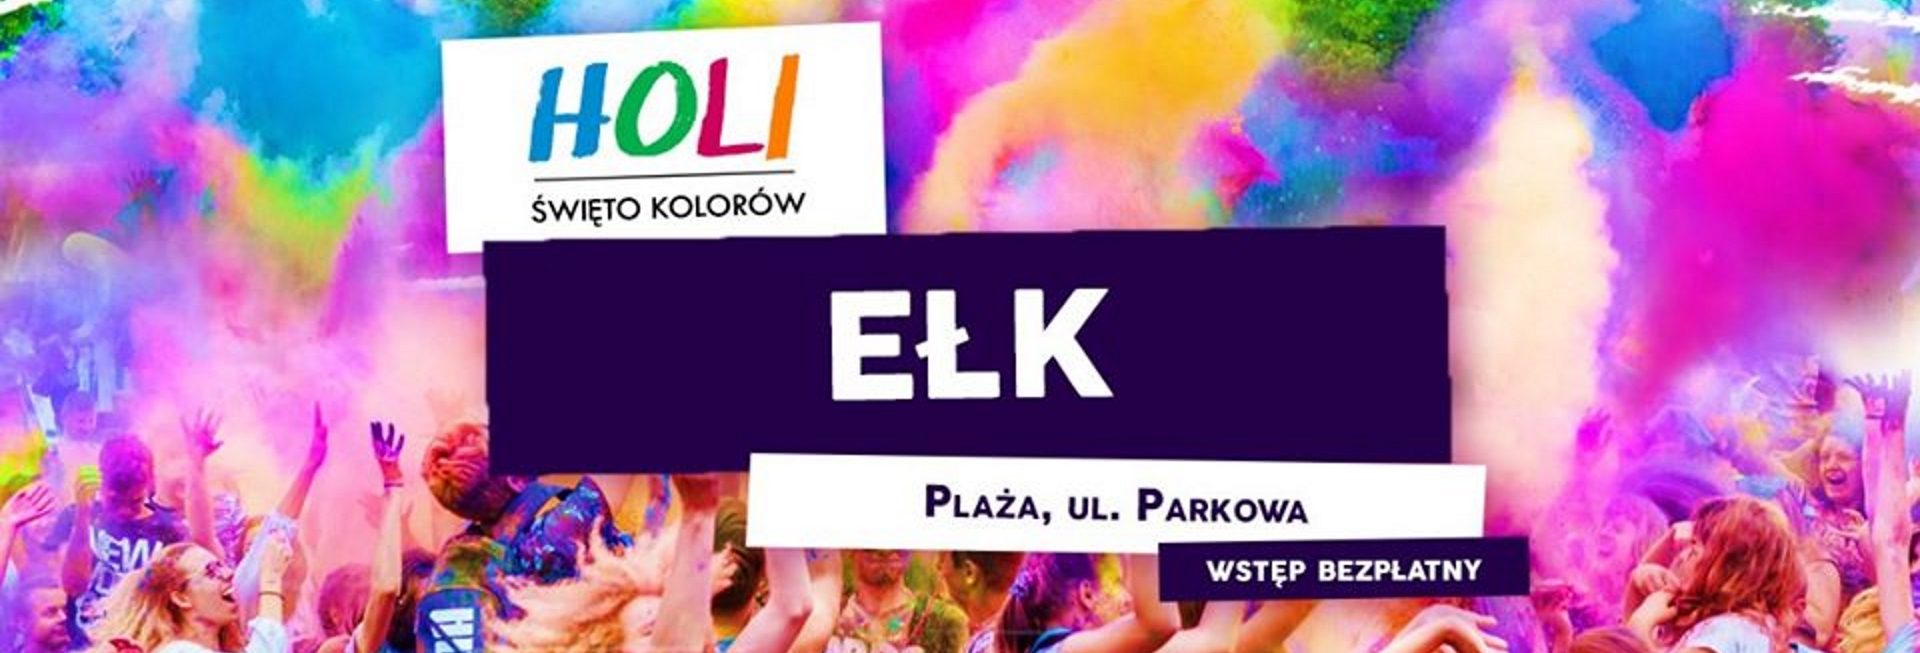 Plakat graficzny zapraszający do Ełku na imprezę Holi Święto Kolorów - Ełk 2020, Na plakacie zdjęcie bawiącej się publiczności a nad nimi chmura wielokolorowych proszków.     